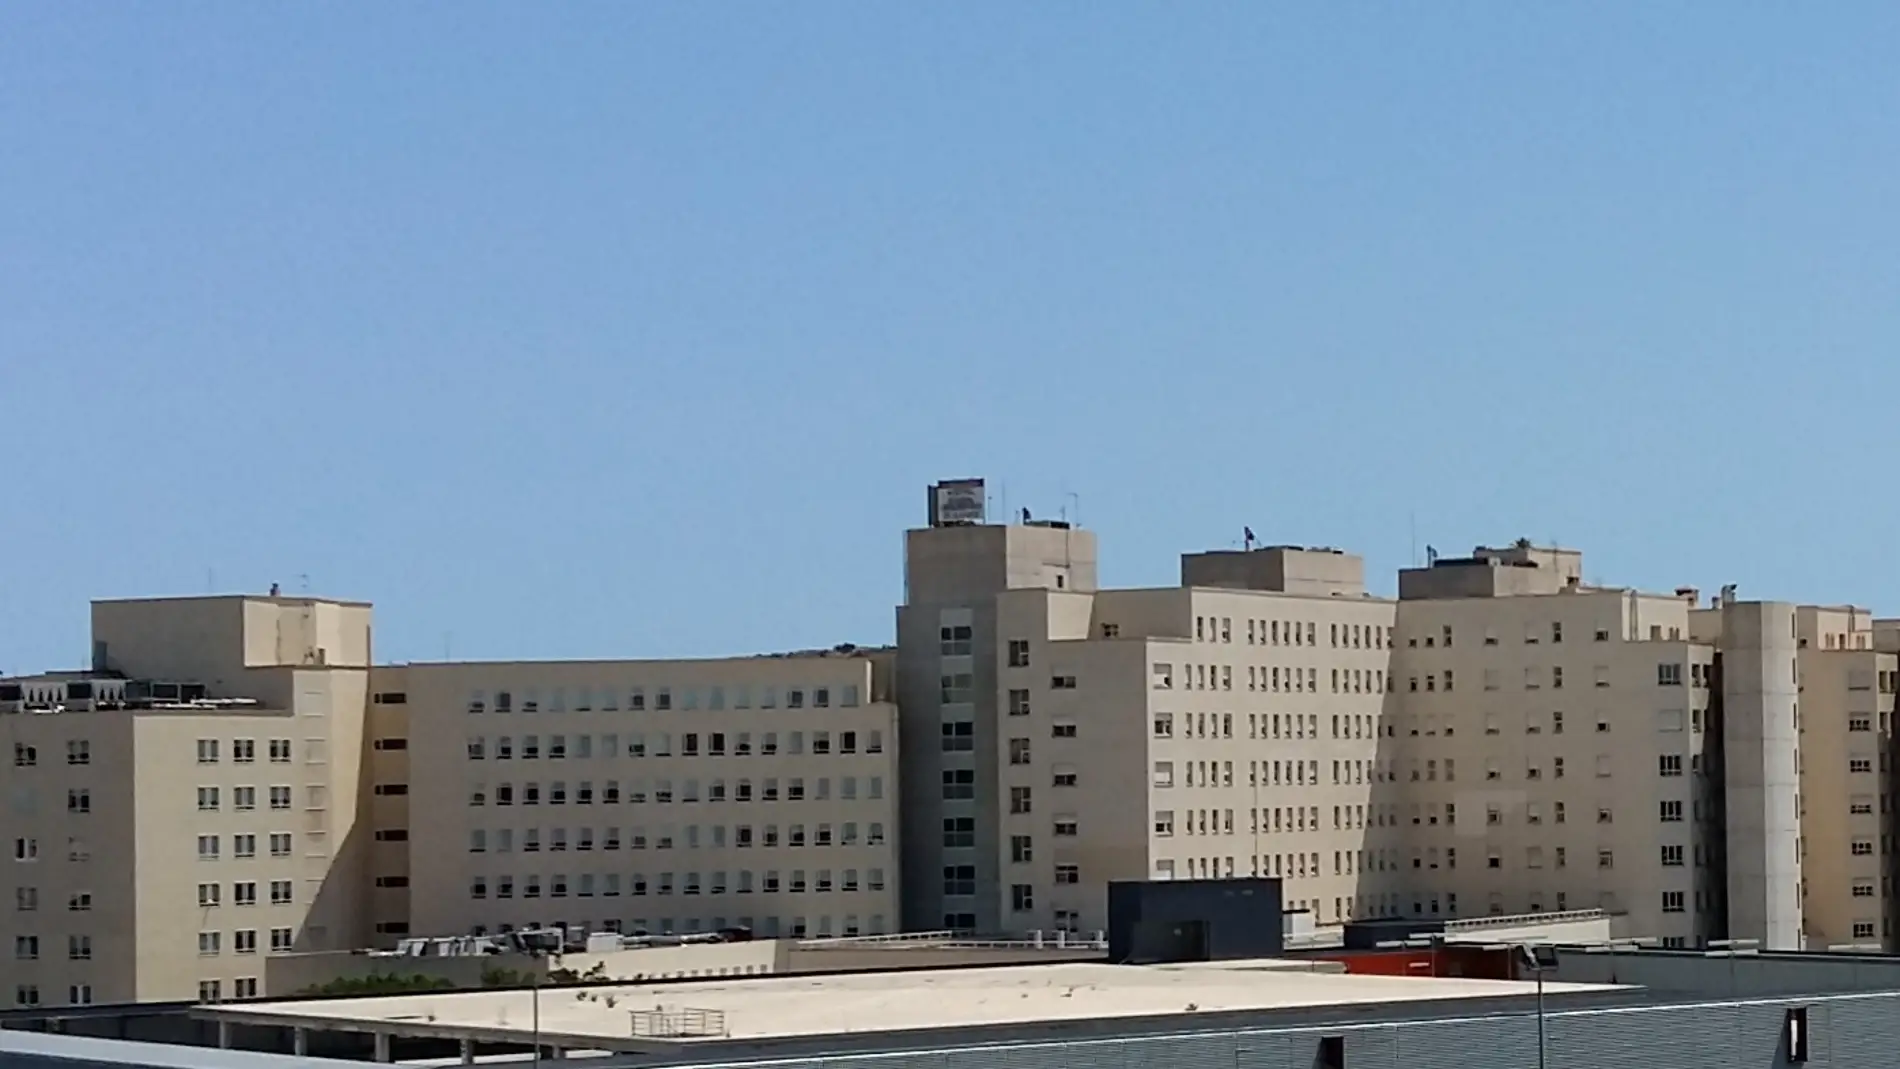 El hospital general de Alicante